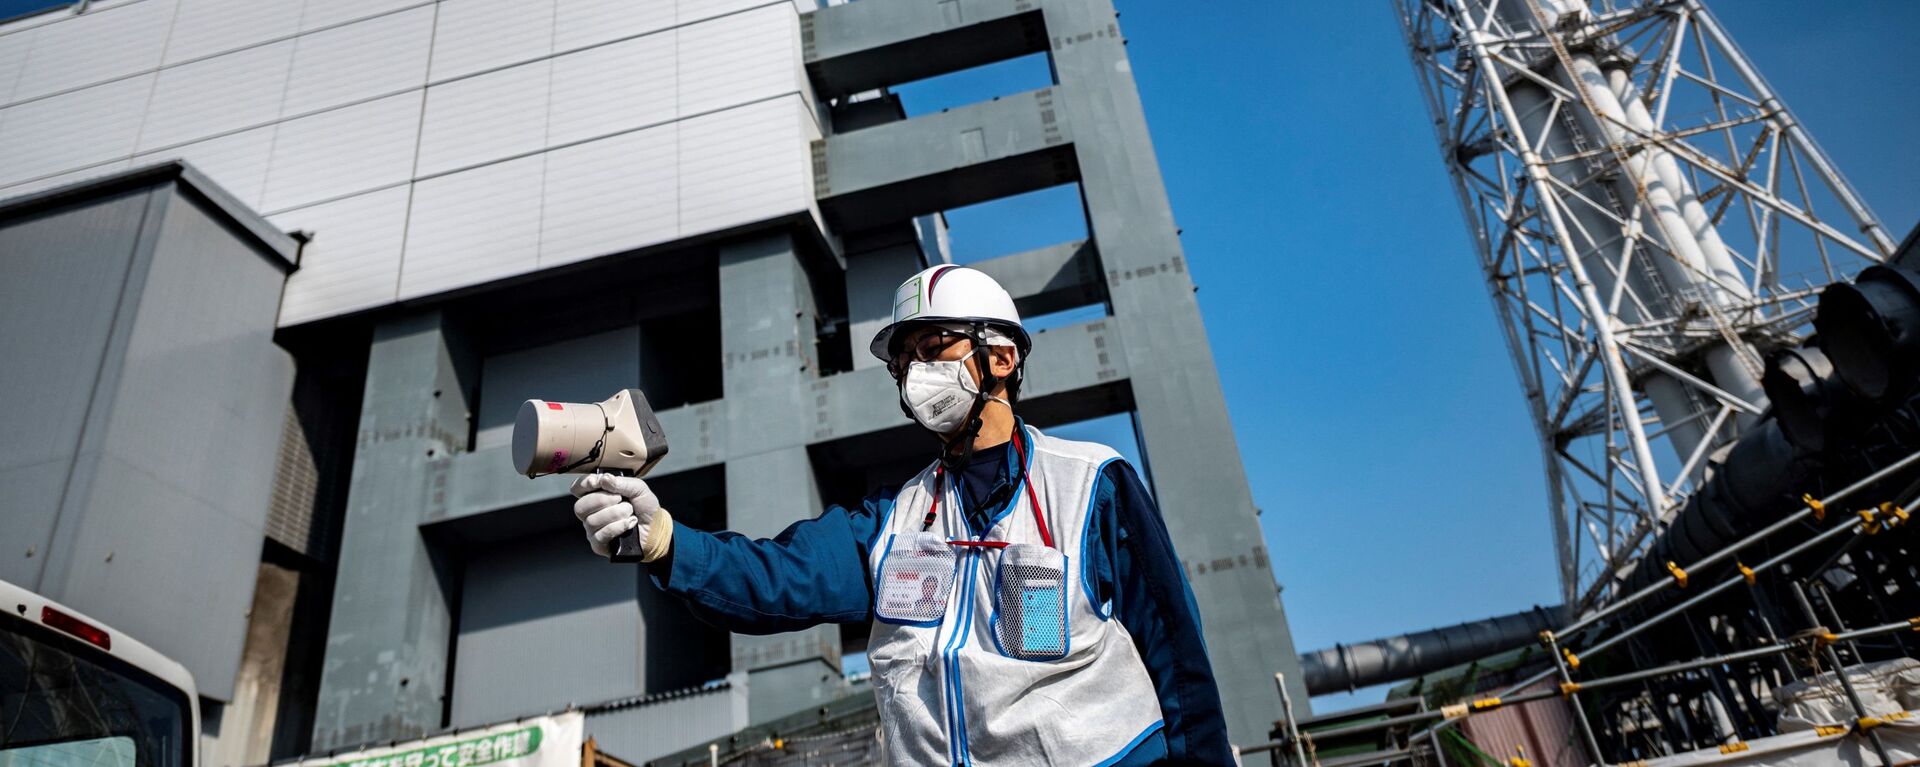 Специалист проверяет уровень радиации с помощью дозиметра рядом с зданием реактора на атомной электростанции Фукусима - Sputnik 日本, 1920, 22.11.2021